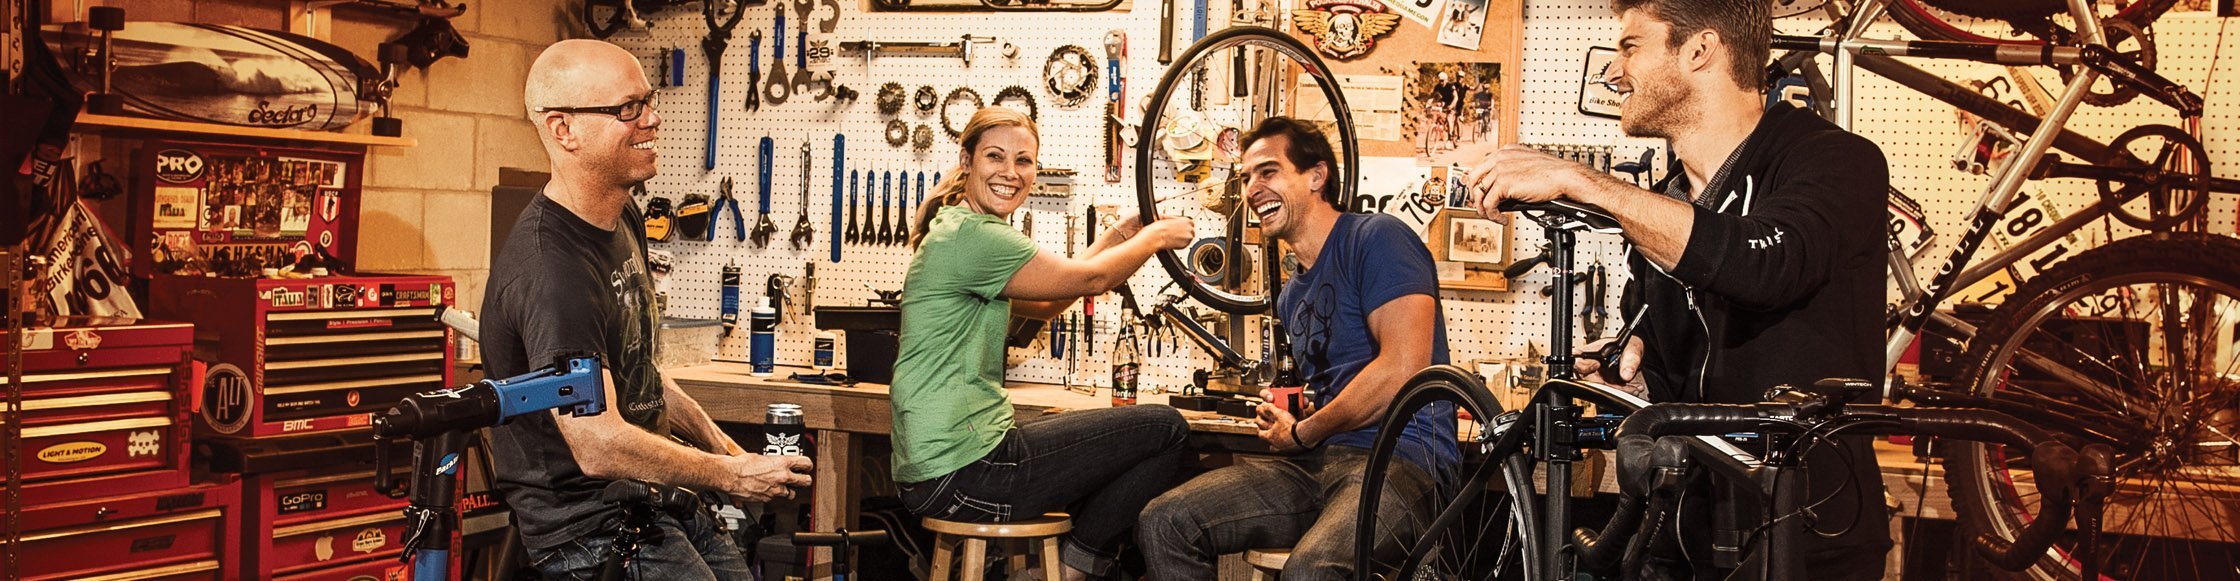 ParkTool Fahrrad Werkzeug in einer Fahrradwerkstatt, 3 Männer und eine Frau schrauben fröhlich an Fahrrädern